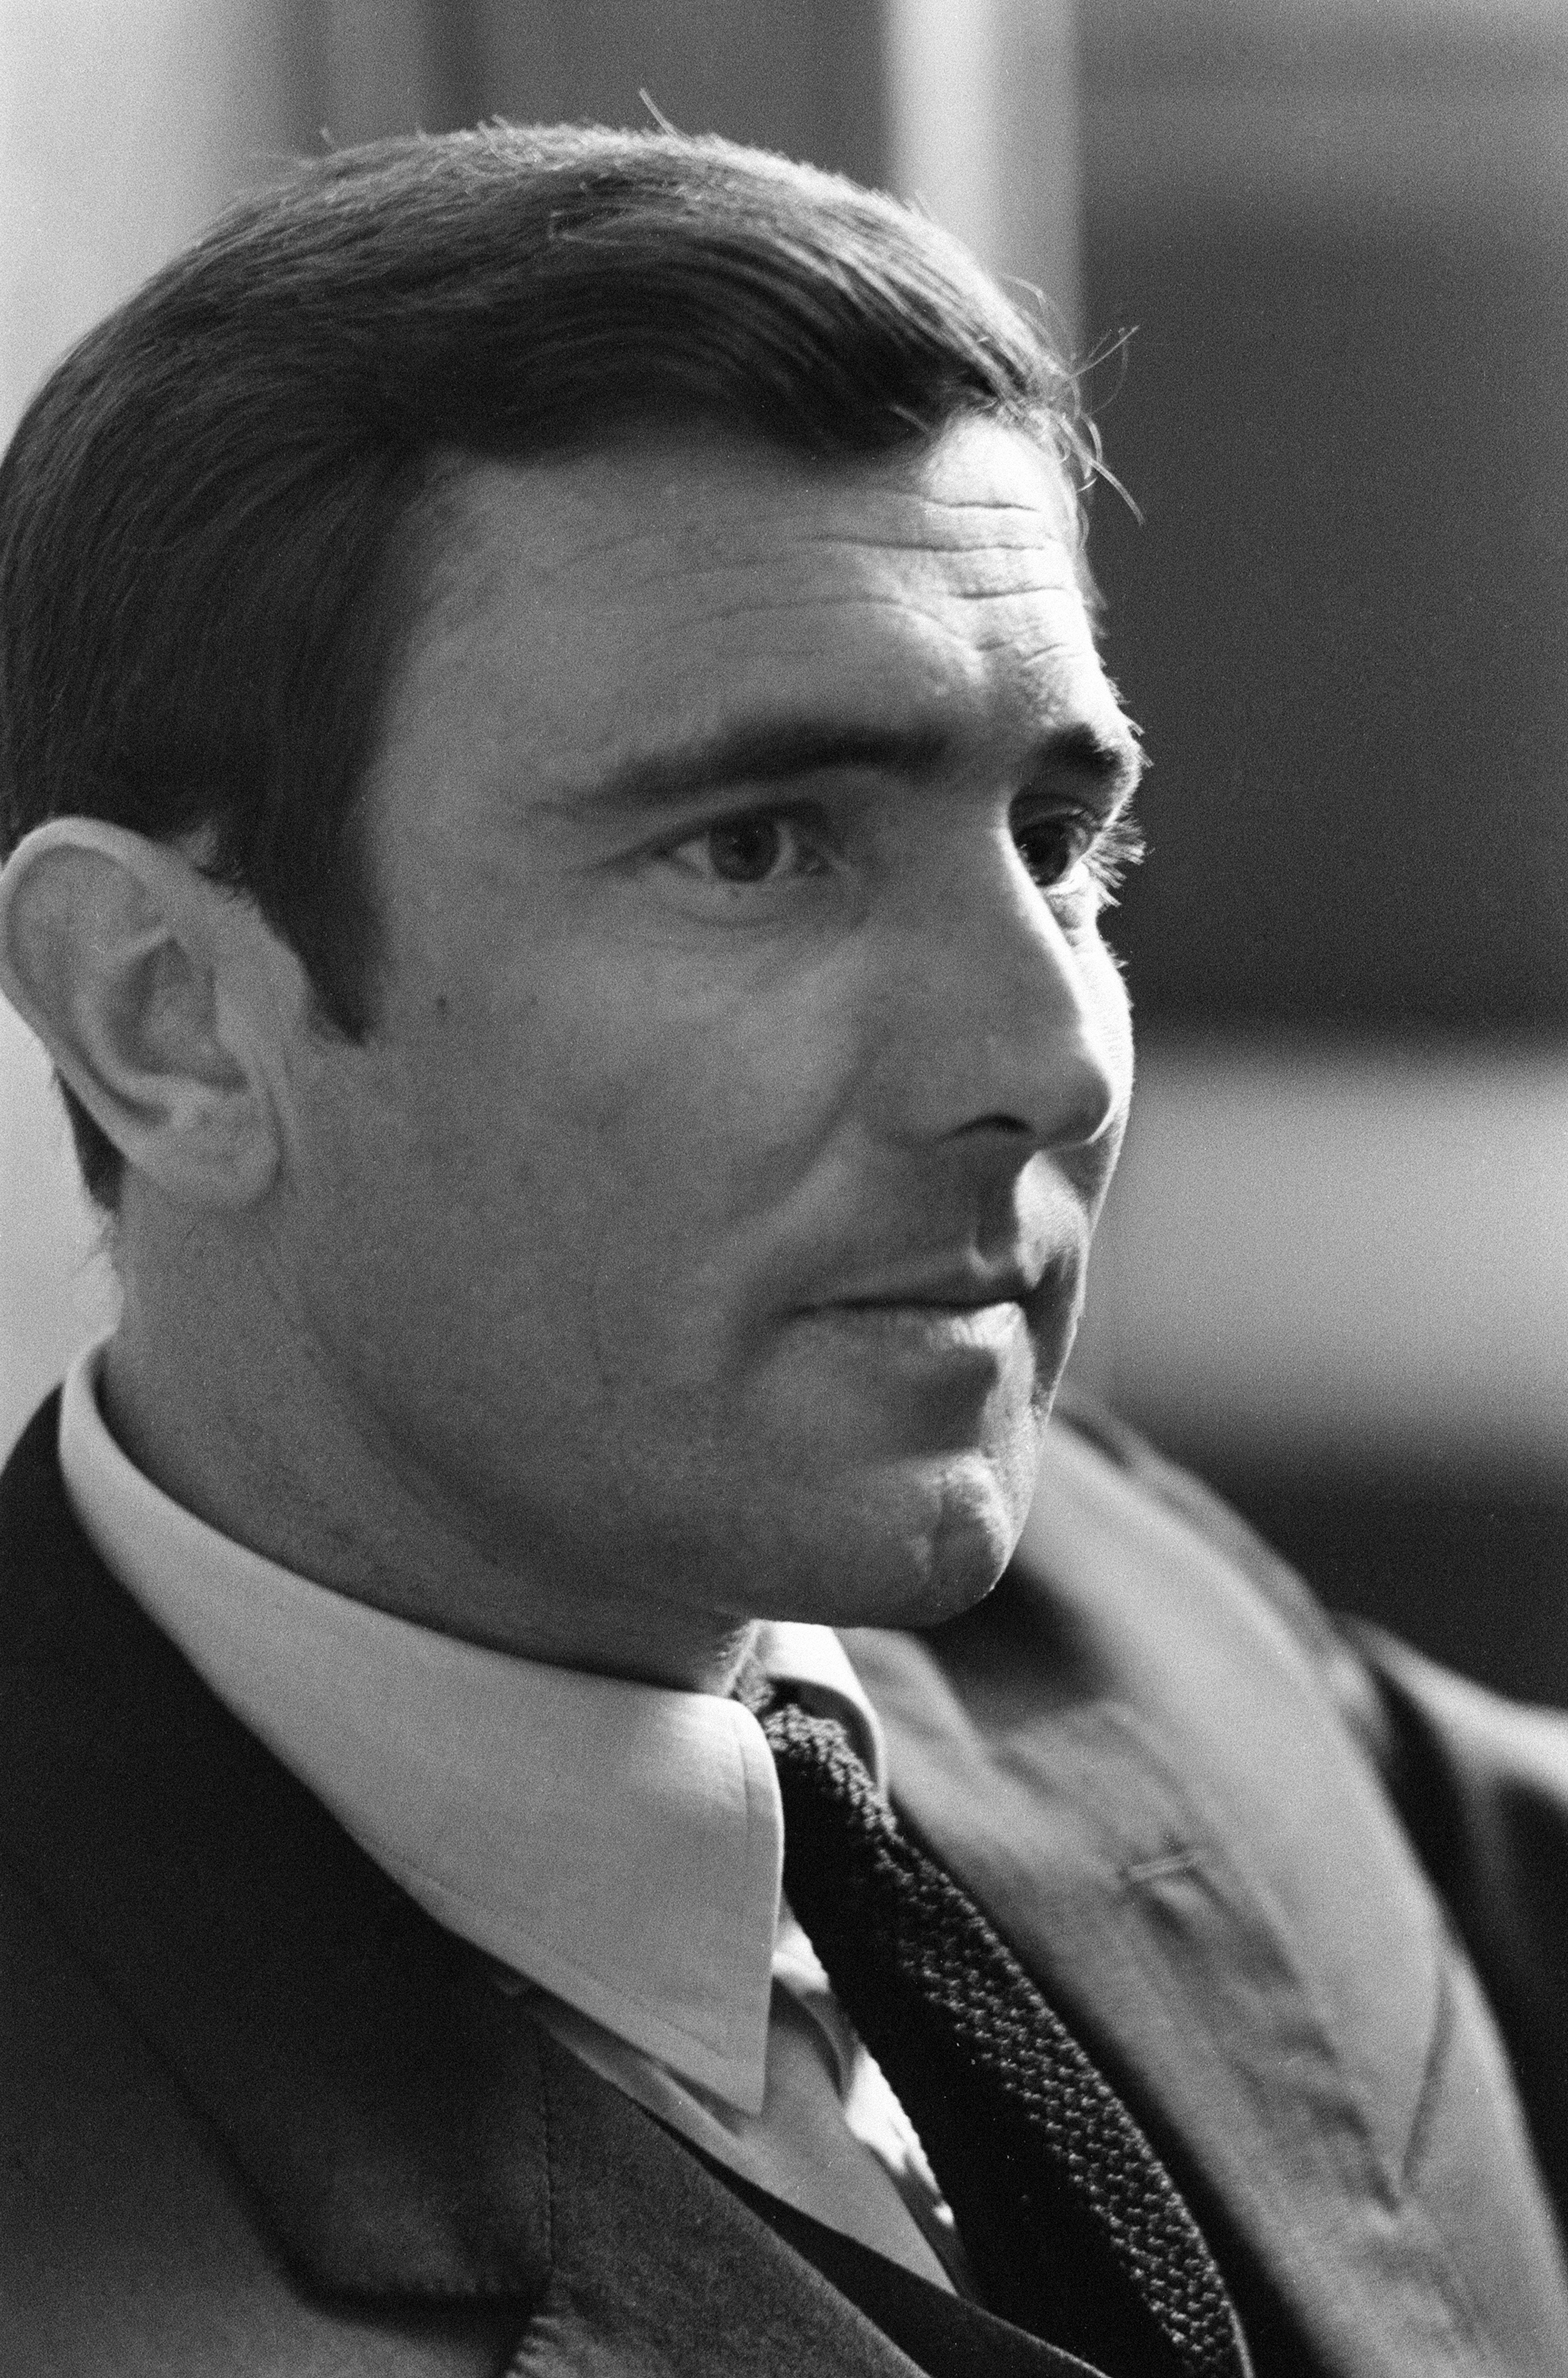 Cet homme est officiellement présenté au monde comme le nouveau James Bond à l'hôtel Dorchester, à Londres, le lundi 7 octobre 1968 | Source : Getty Images